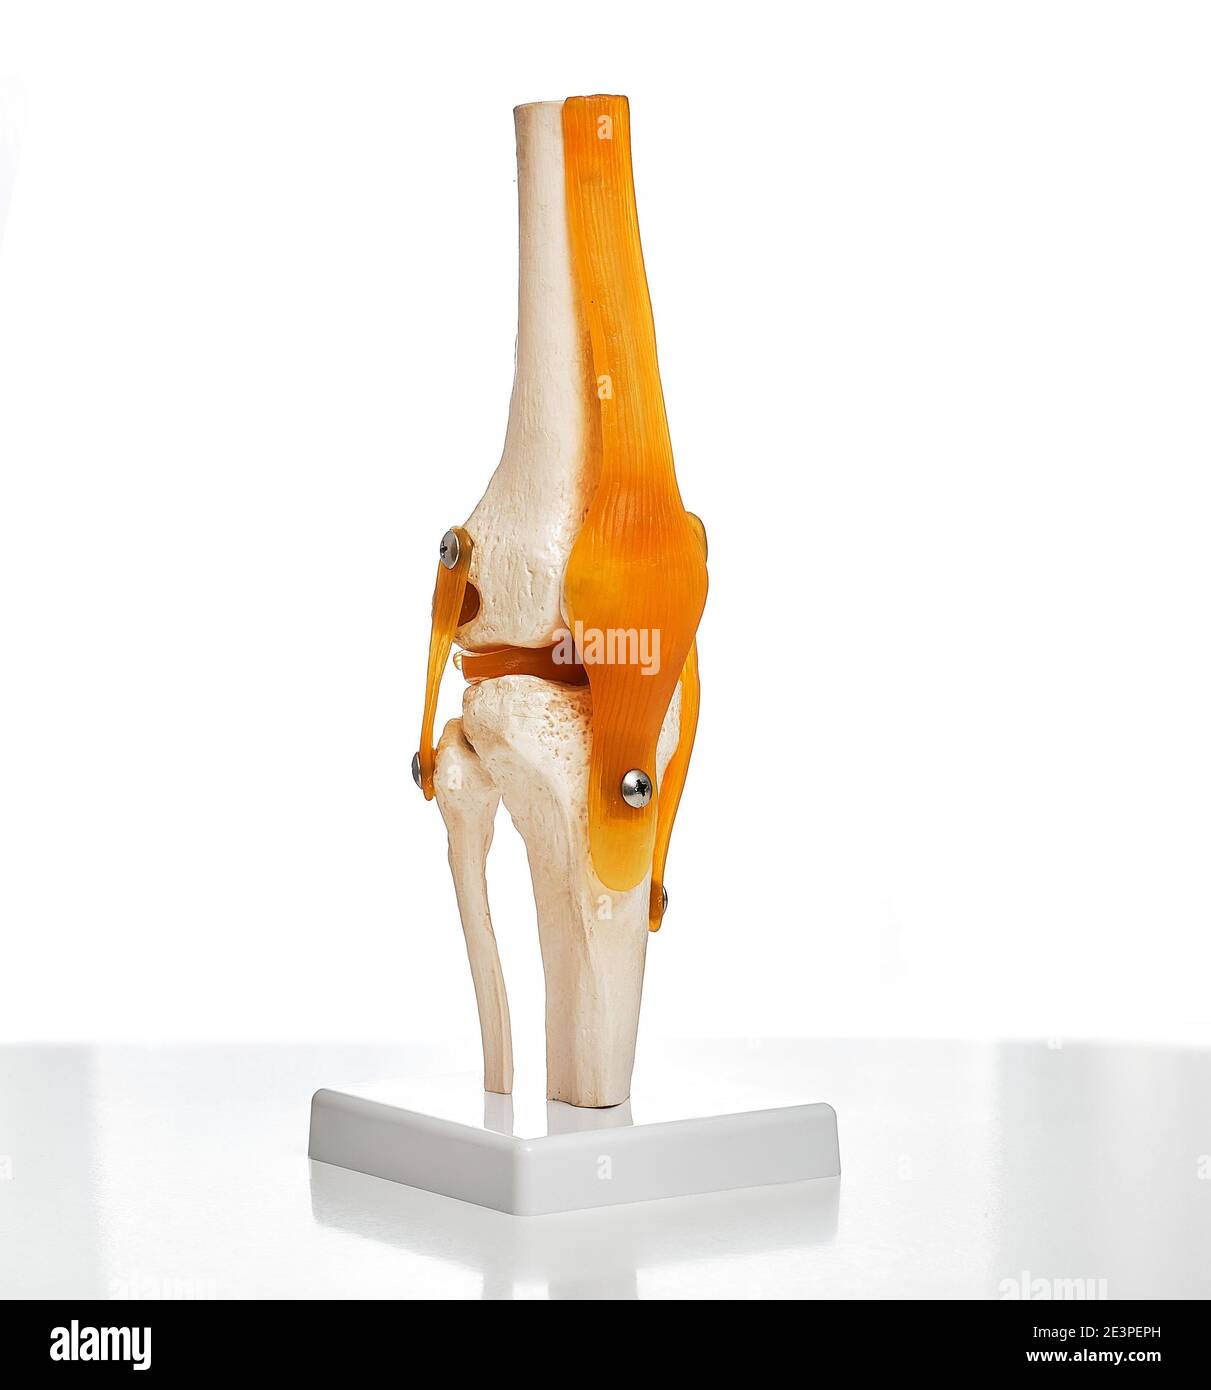 Visuelles anatomisches Modell des menschlichen Kniegelenks zeigt eine Struktur des Knies, der Patella und der Beinsehne. Nahaufnahme auf weißem Hintergrund Stockfoto